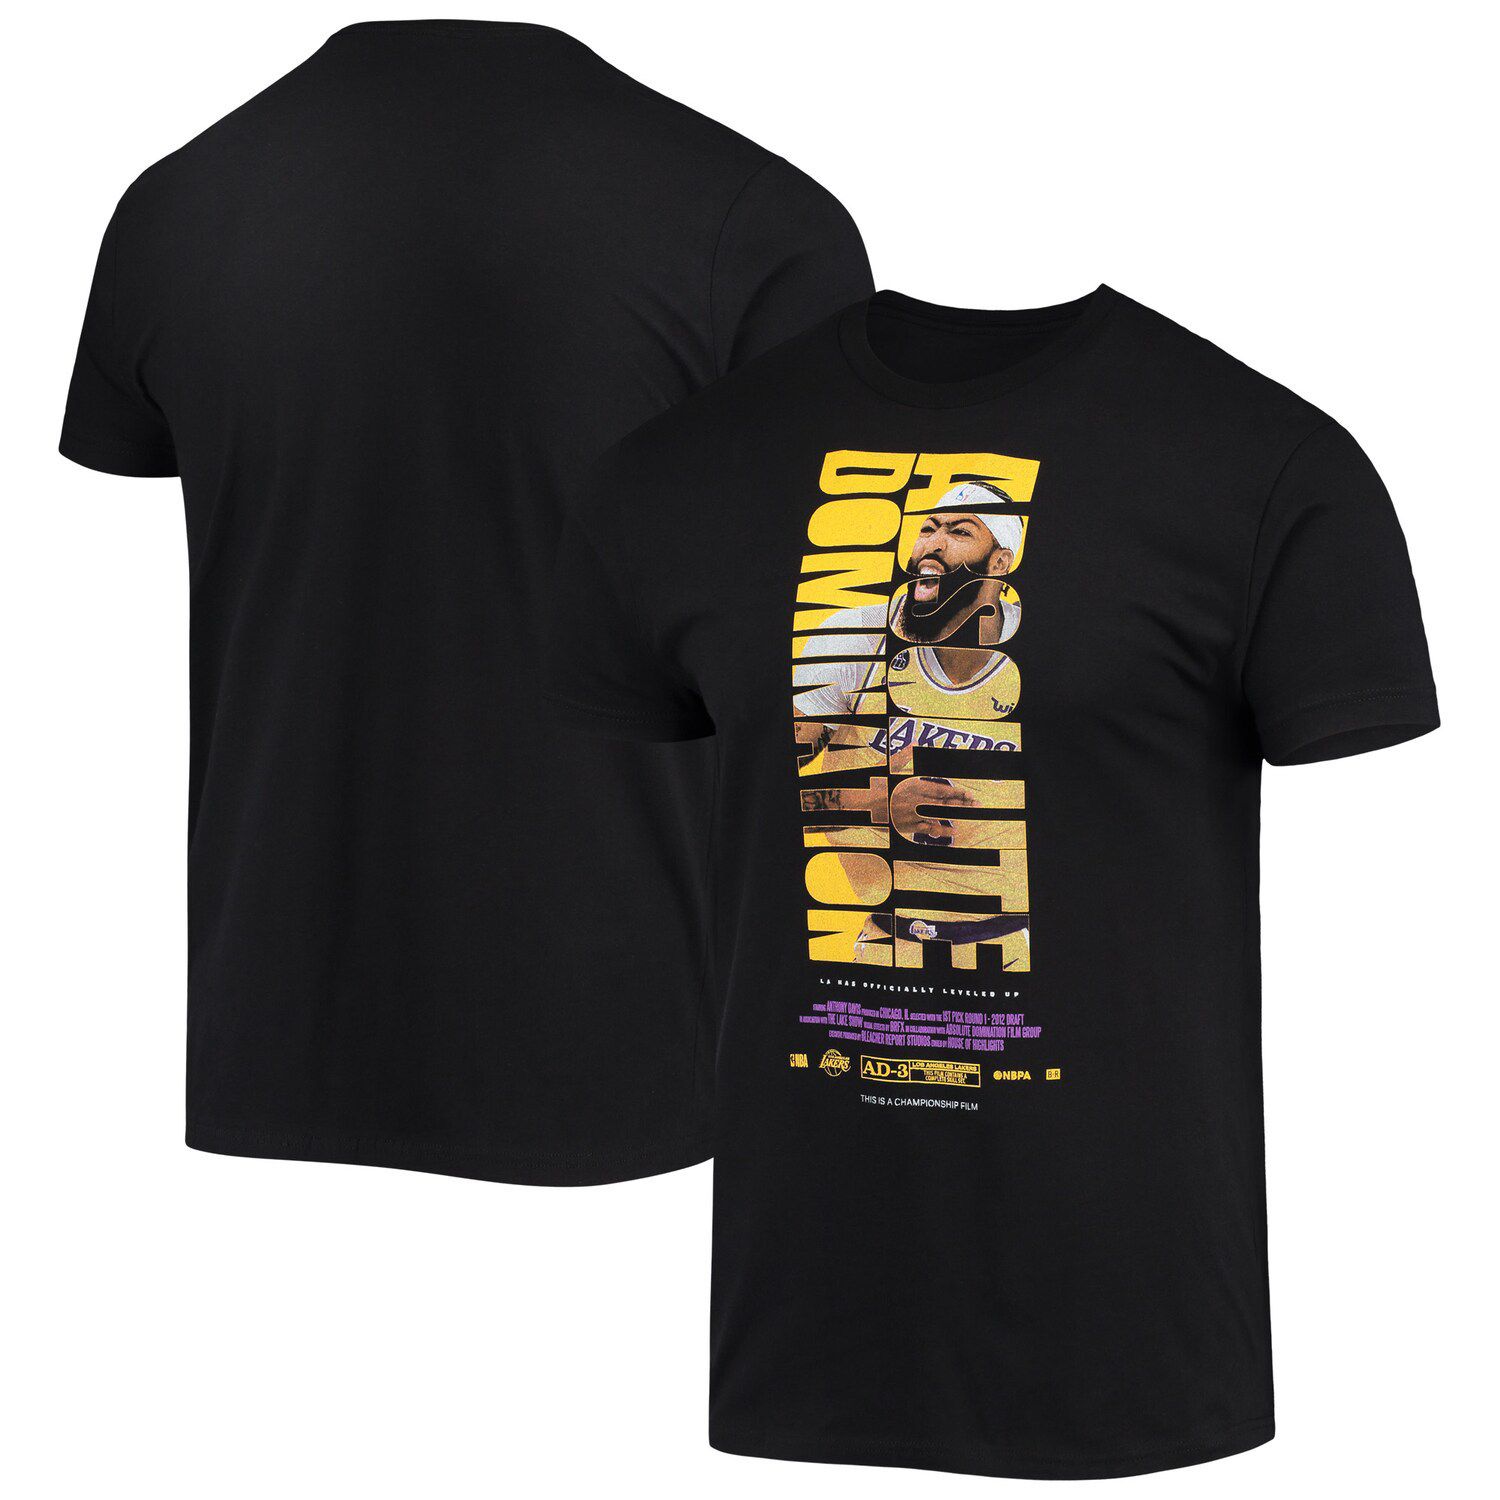 Мужская черная футболка Anthony Davis Los Angeles Lakers с проверкой кредитов